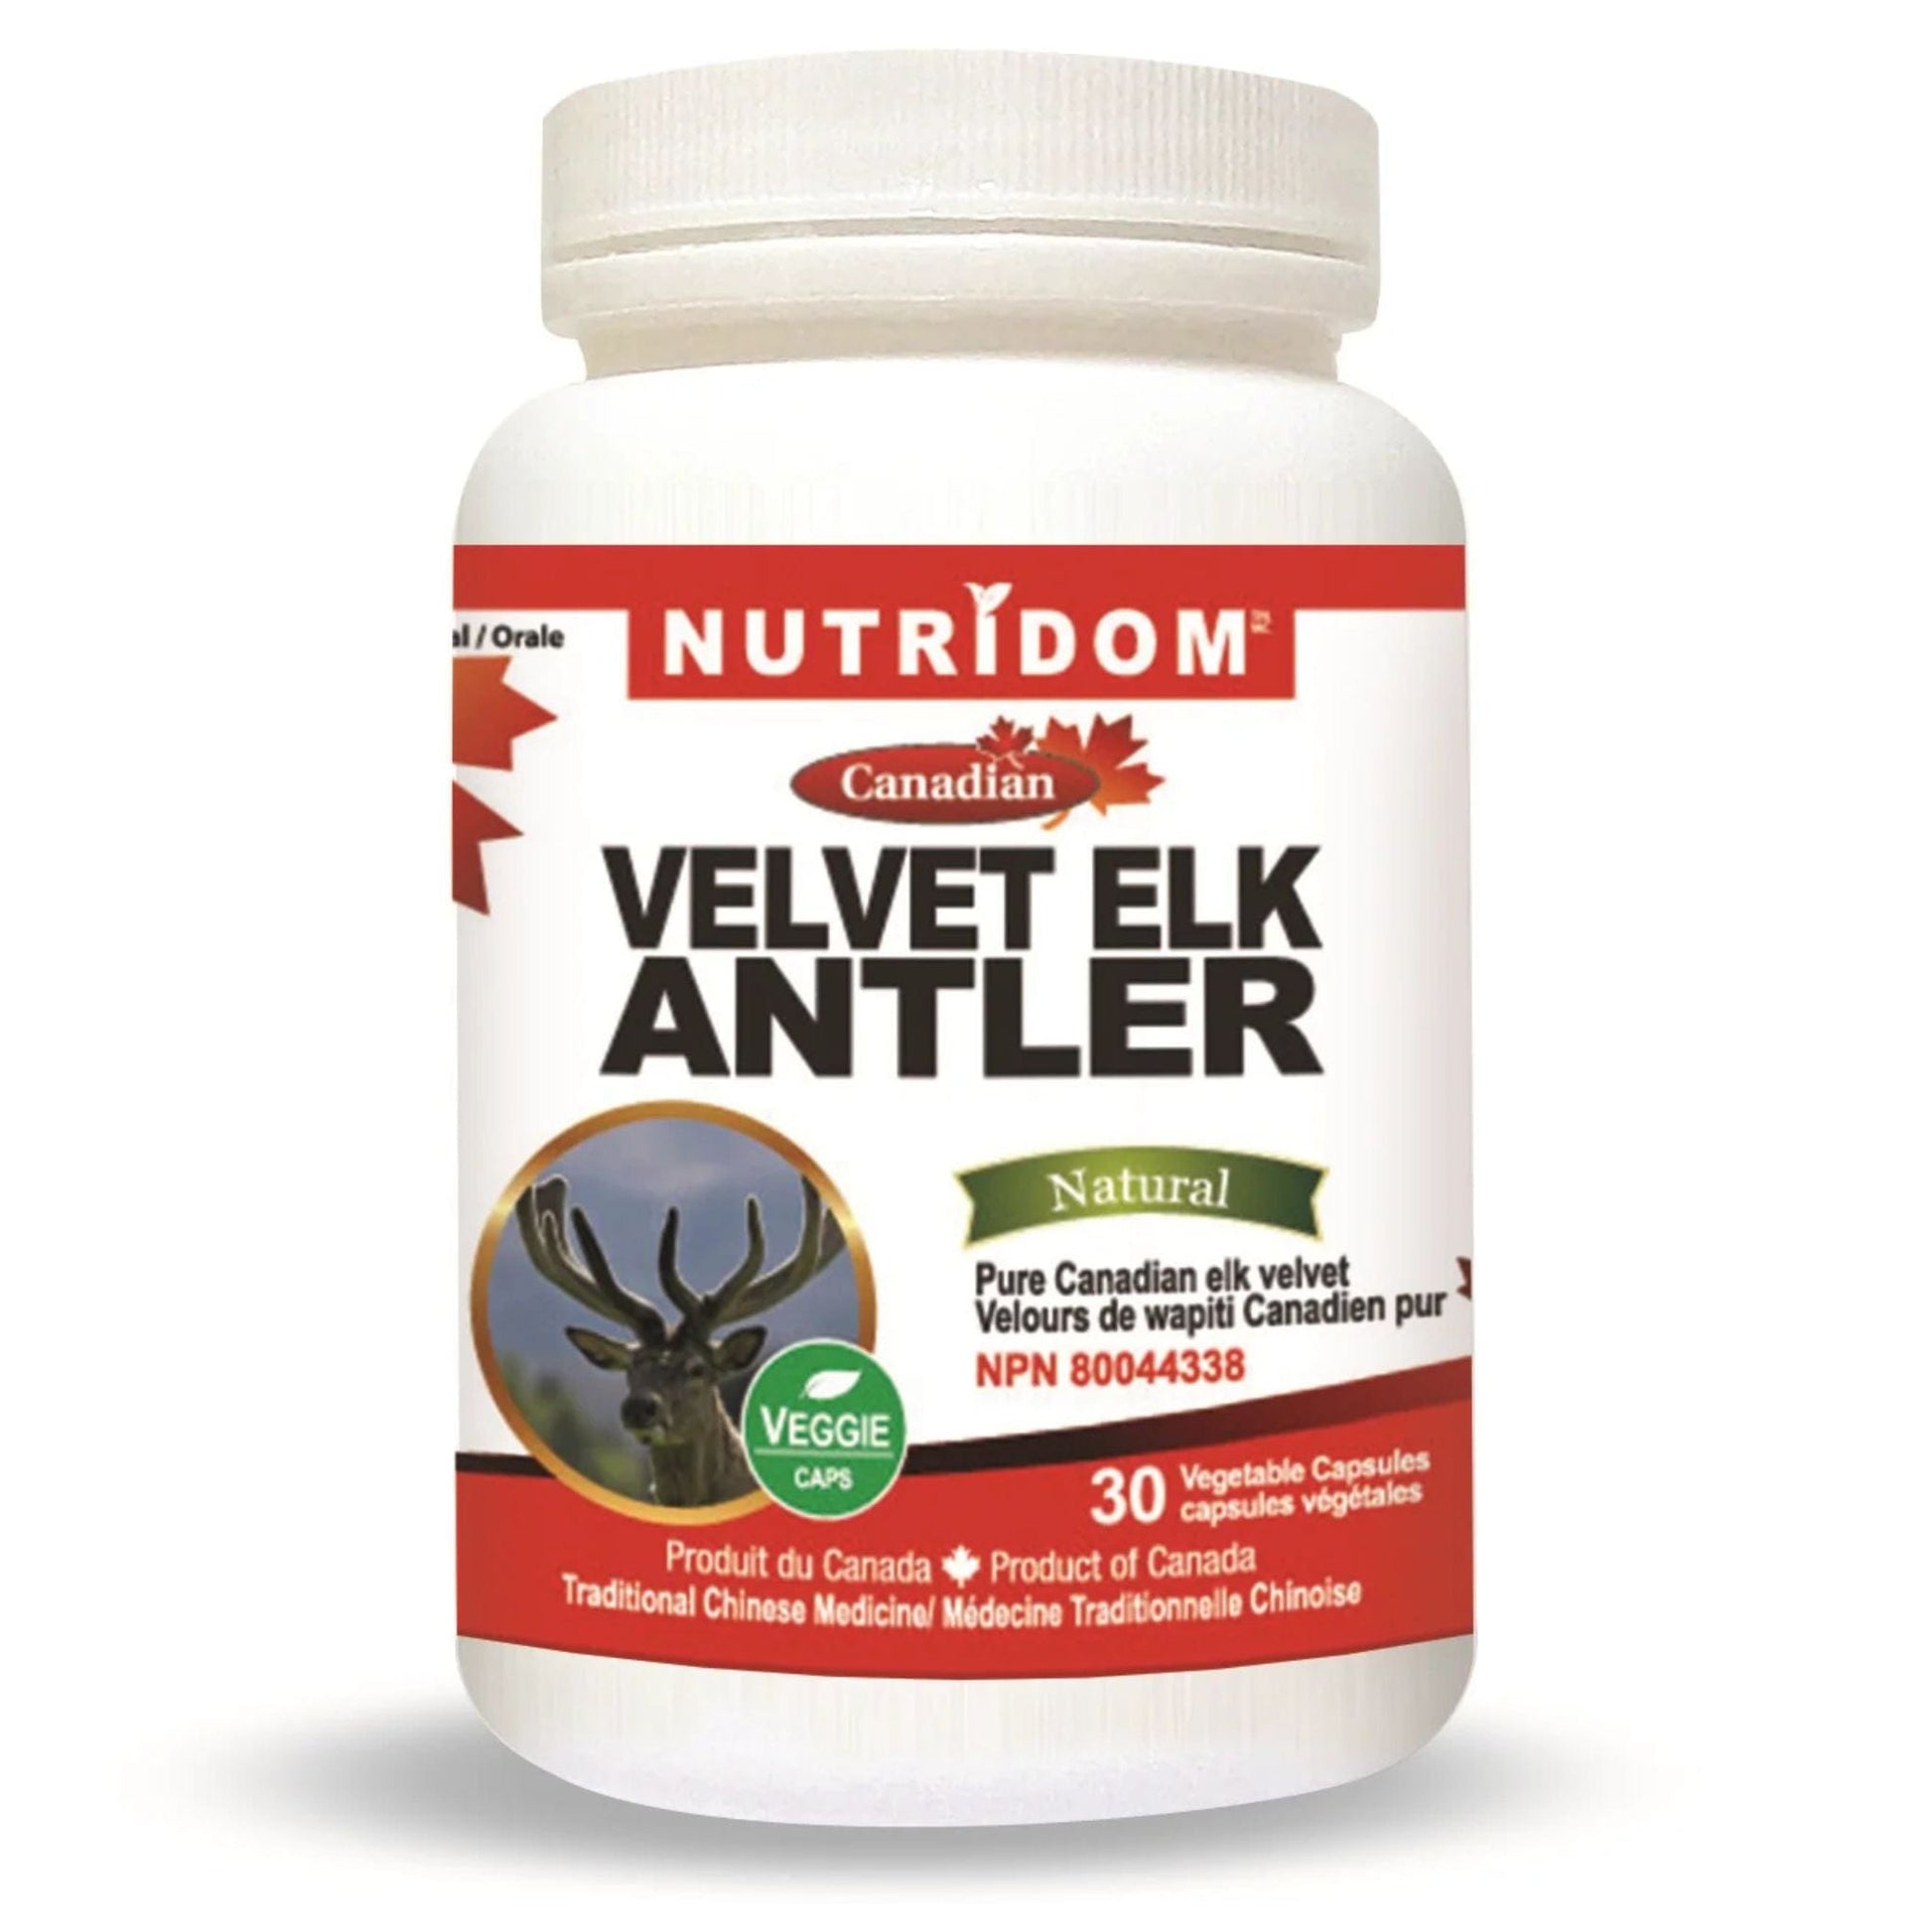 30 Vegetable Capsules | Nutridom Canadian Velvet Elk Antler 